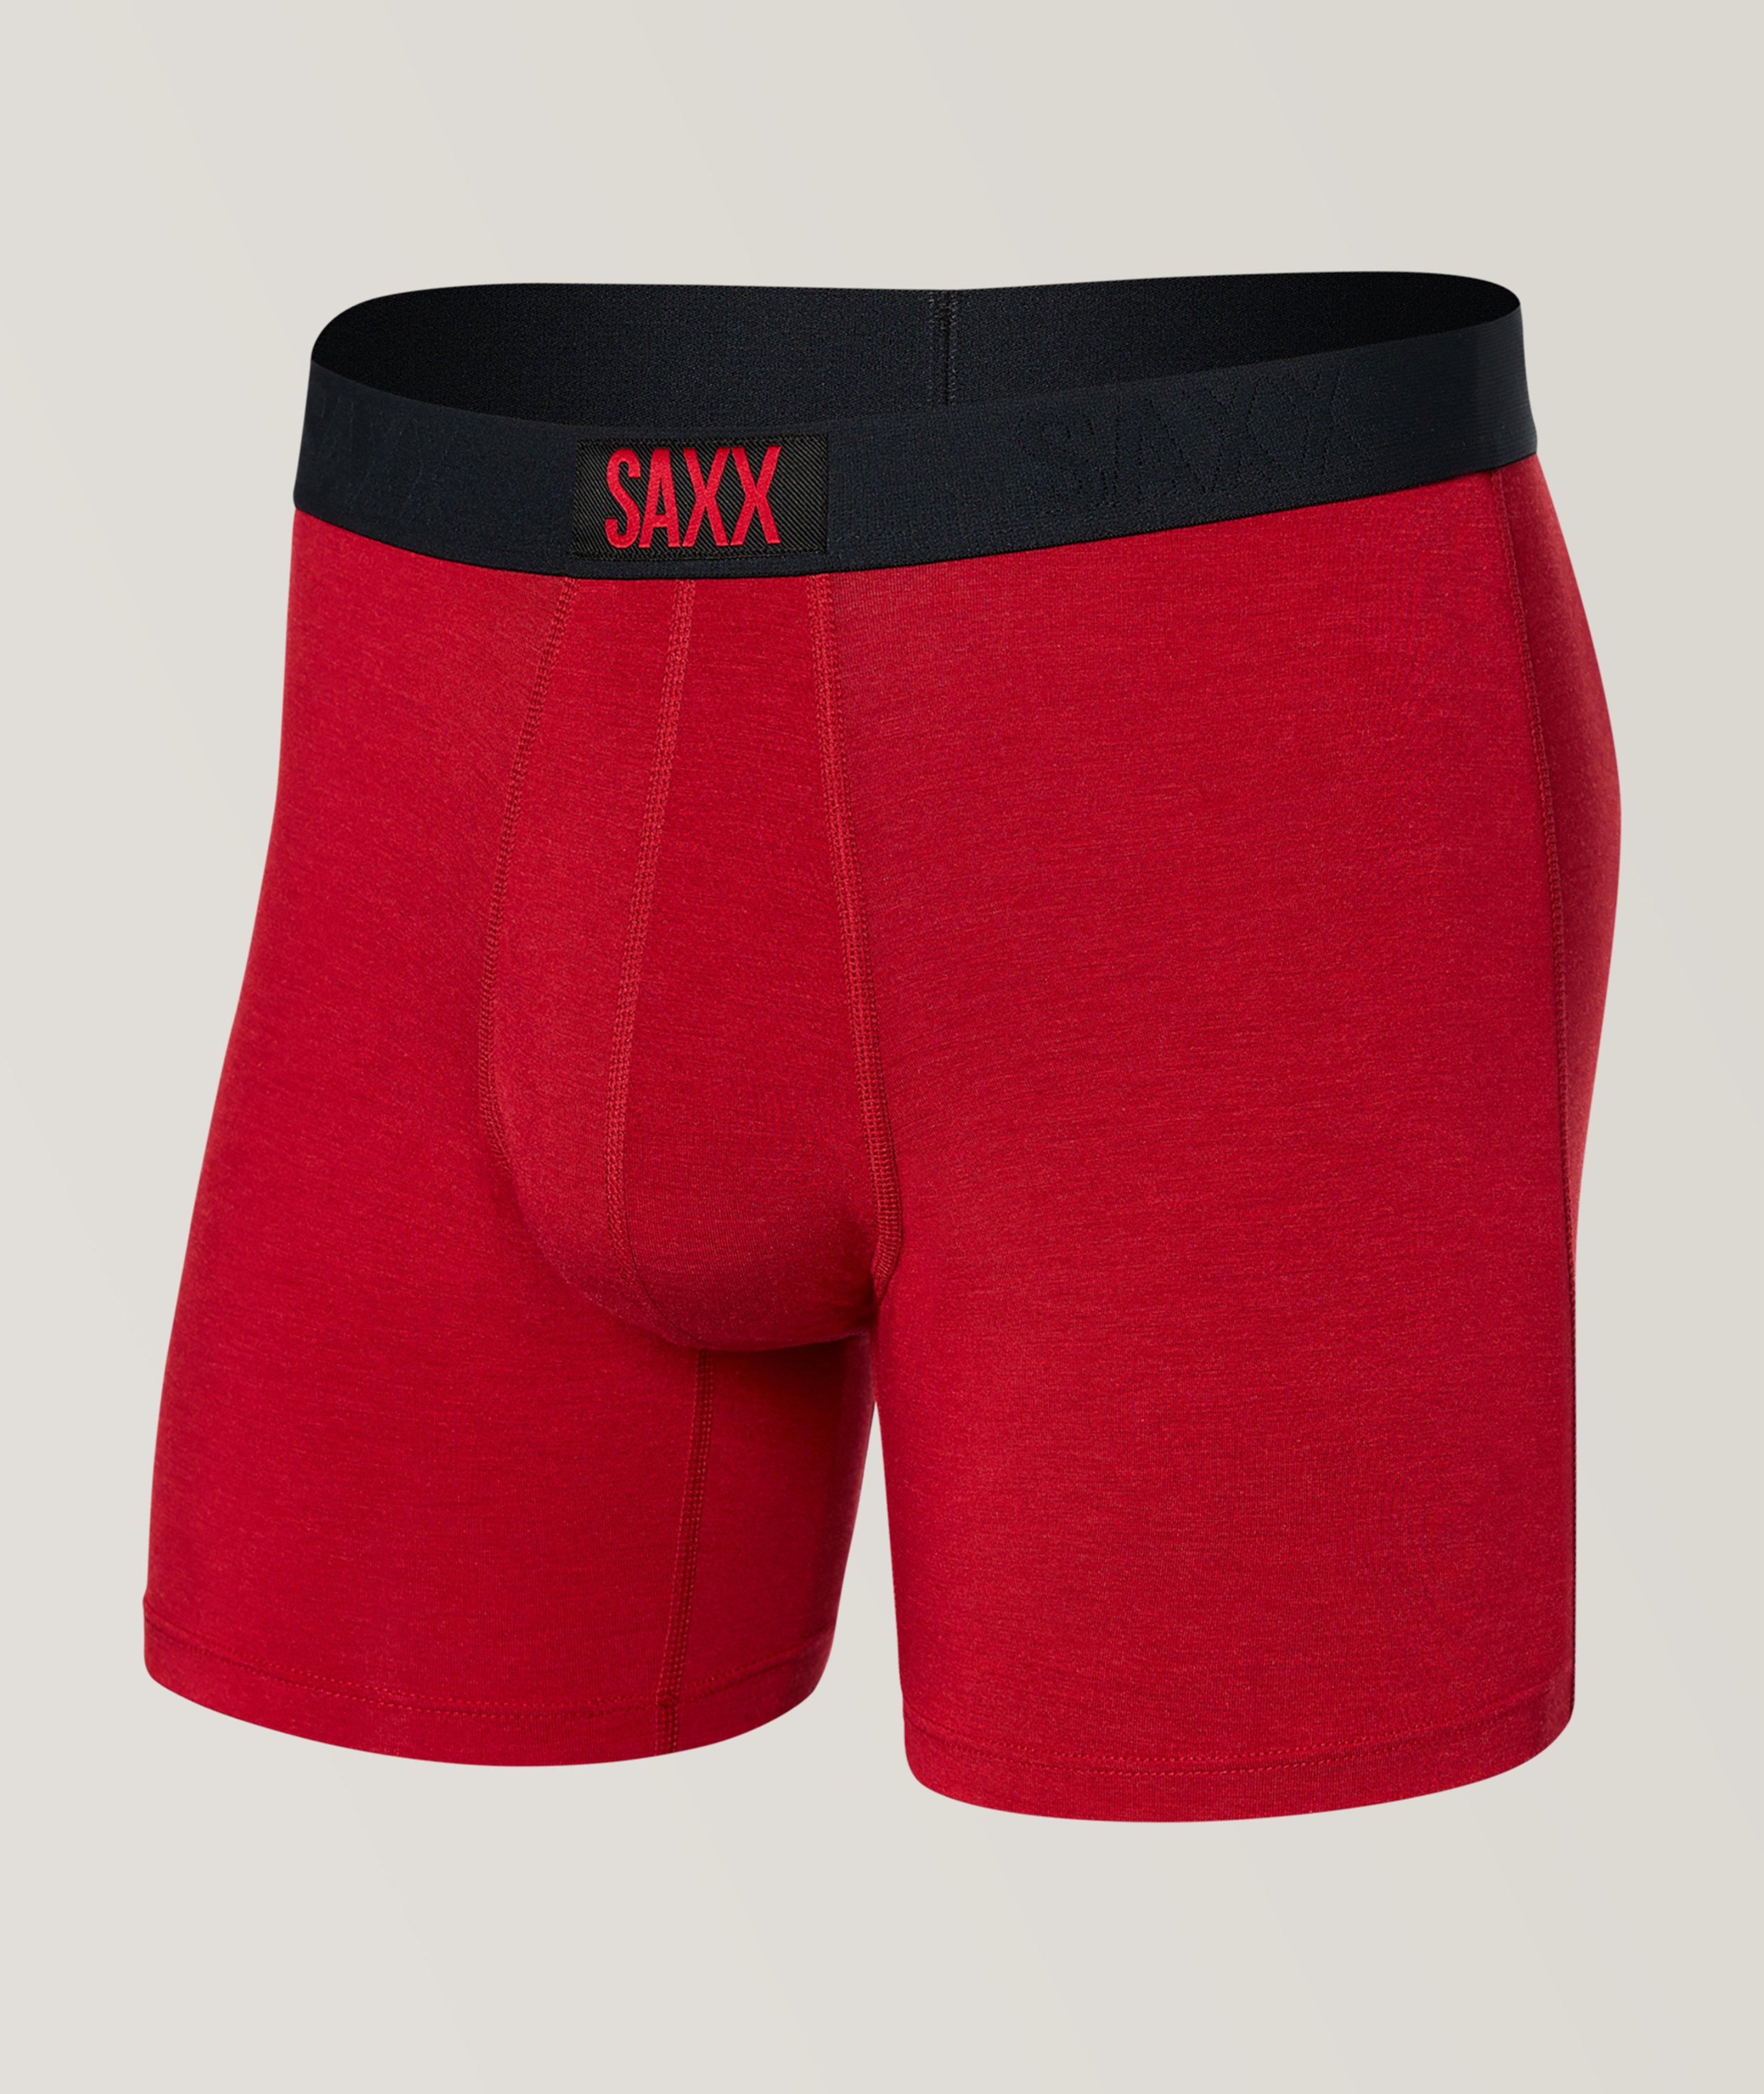 SAXX Vibe Super Soft Boxer Briefs